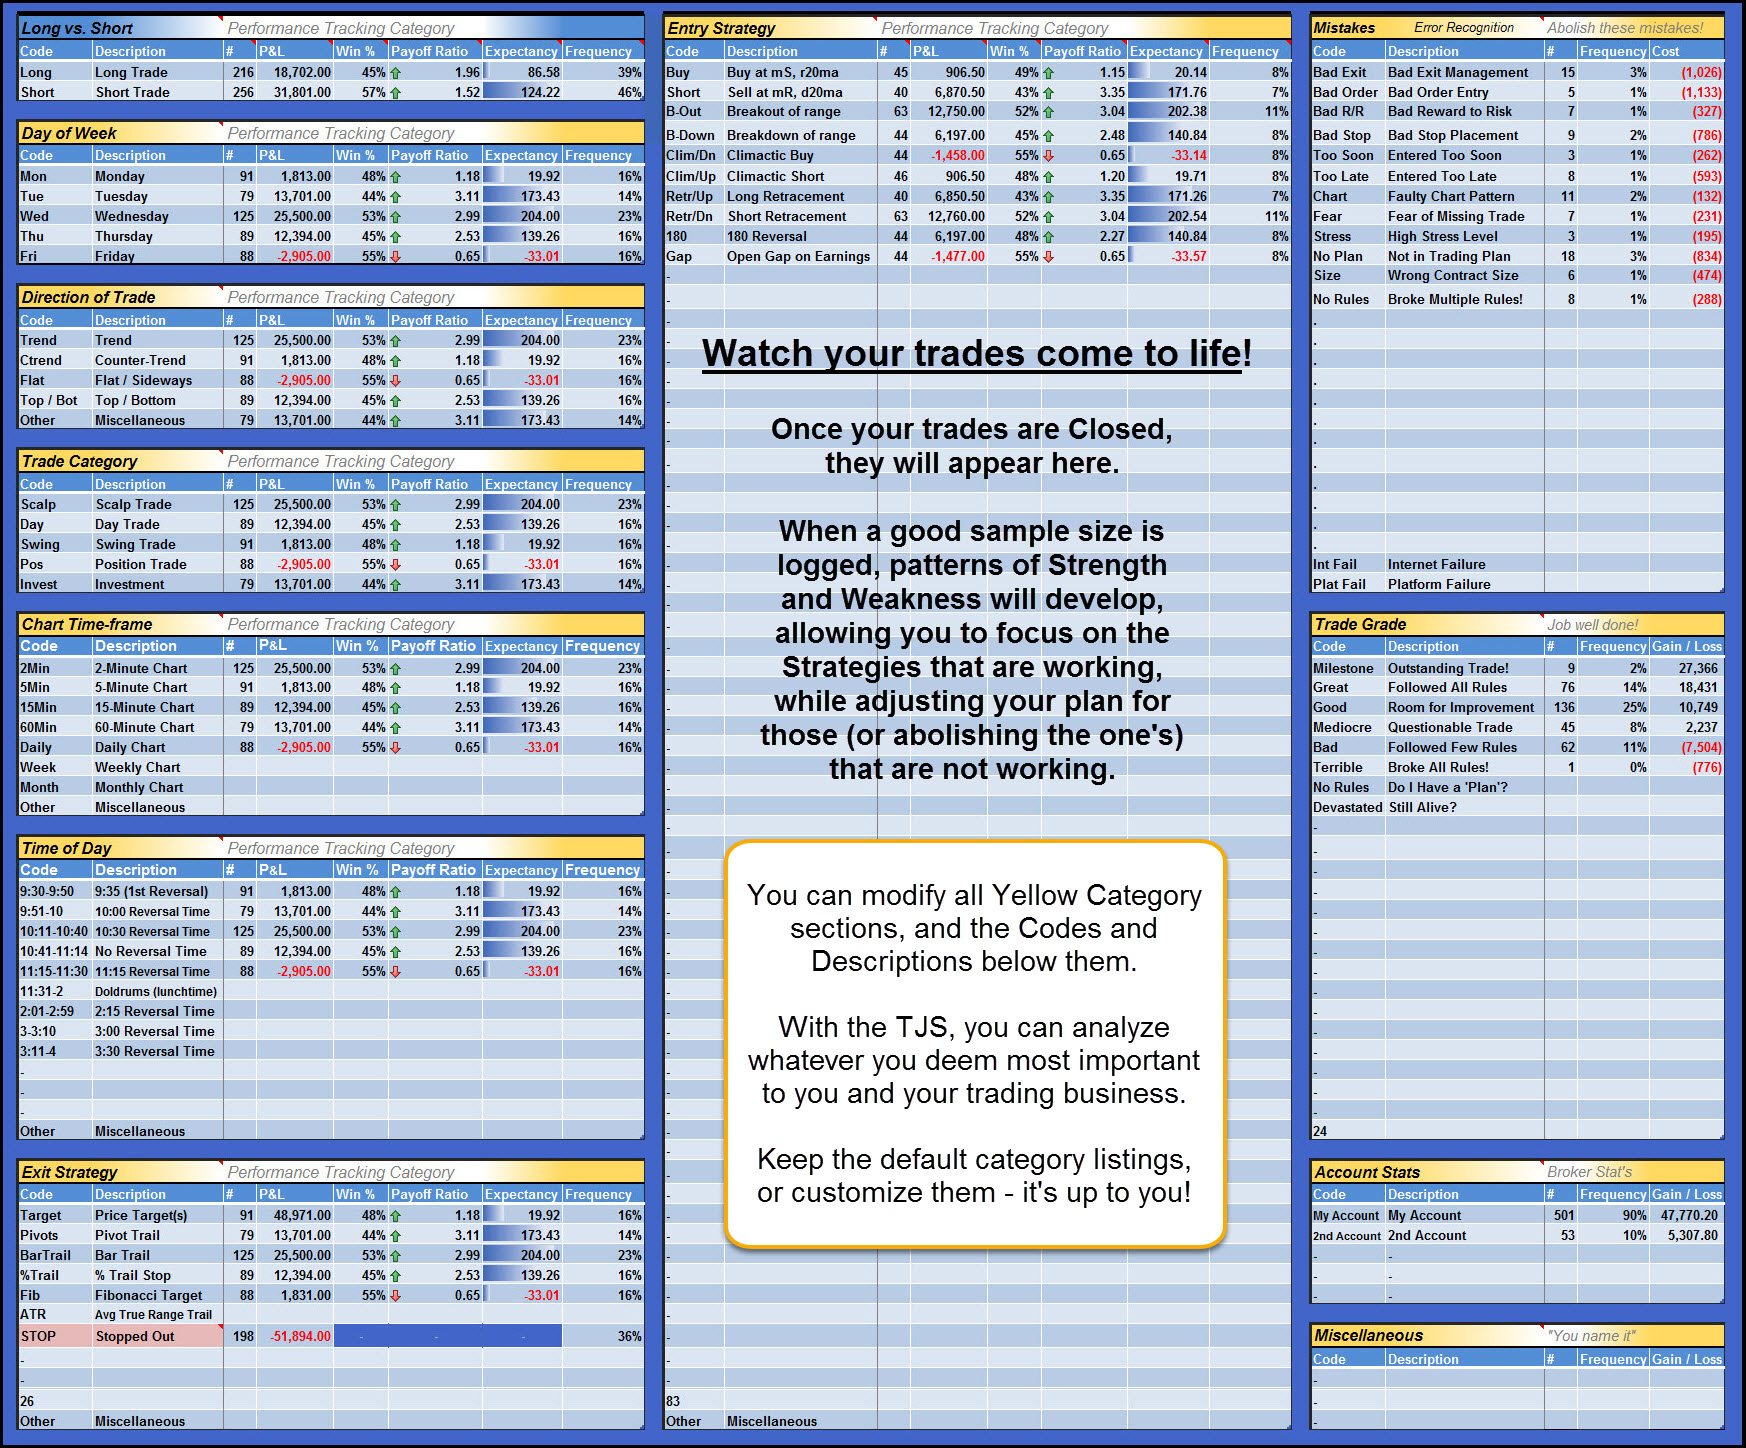 Forex trading plan template pdf